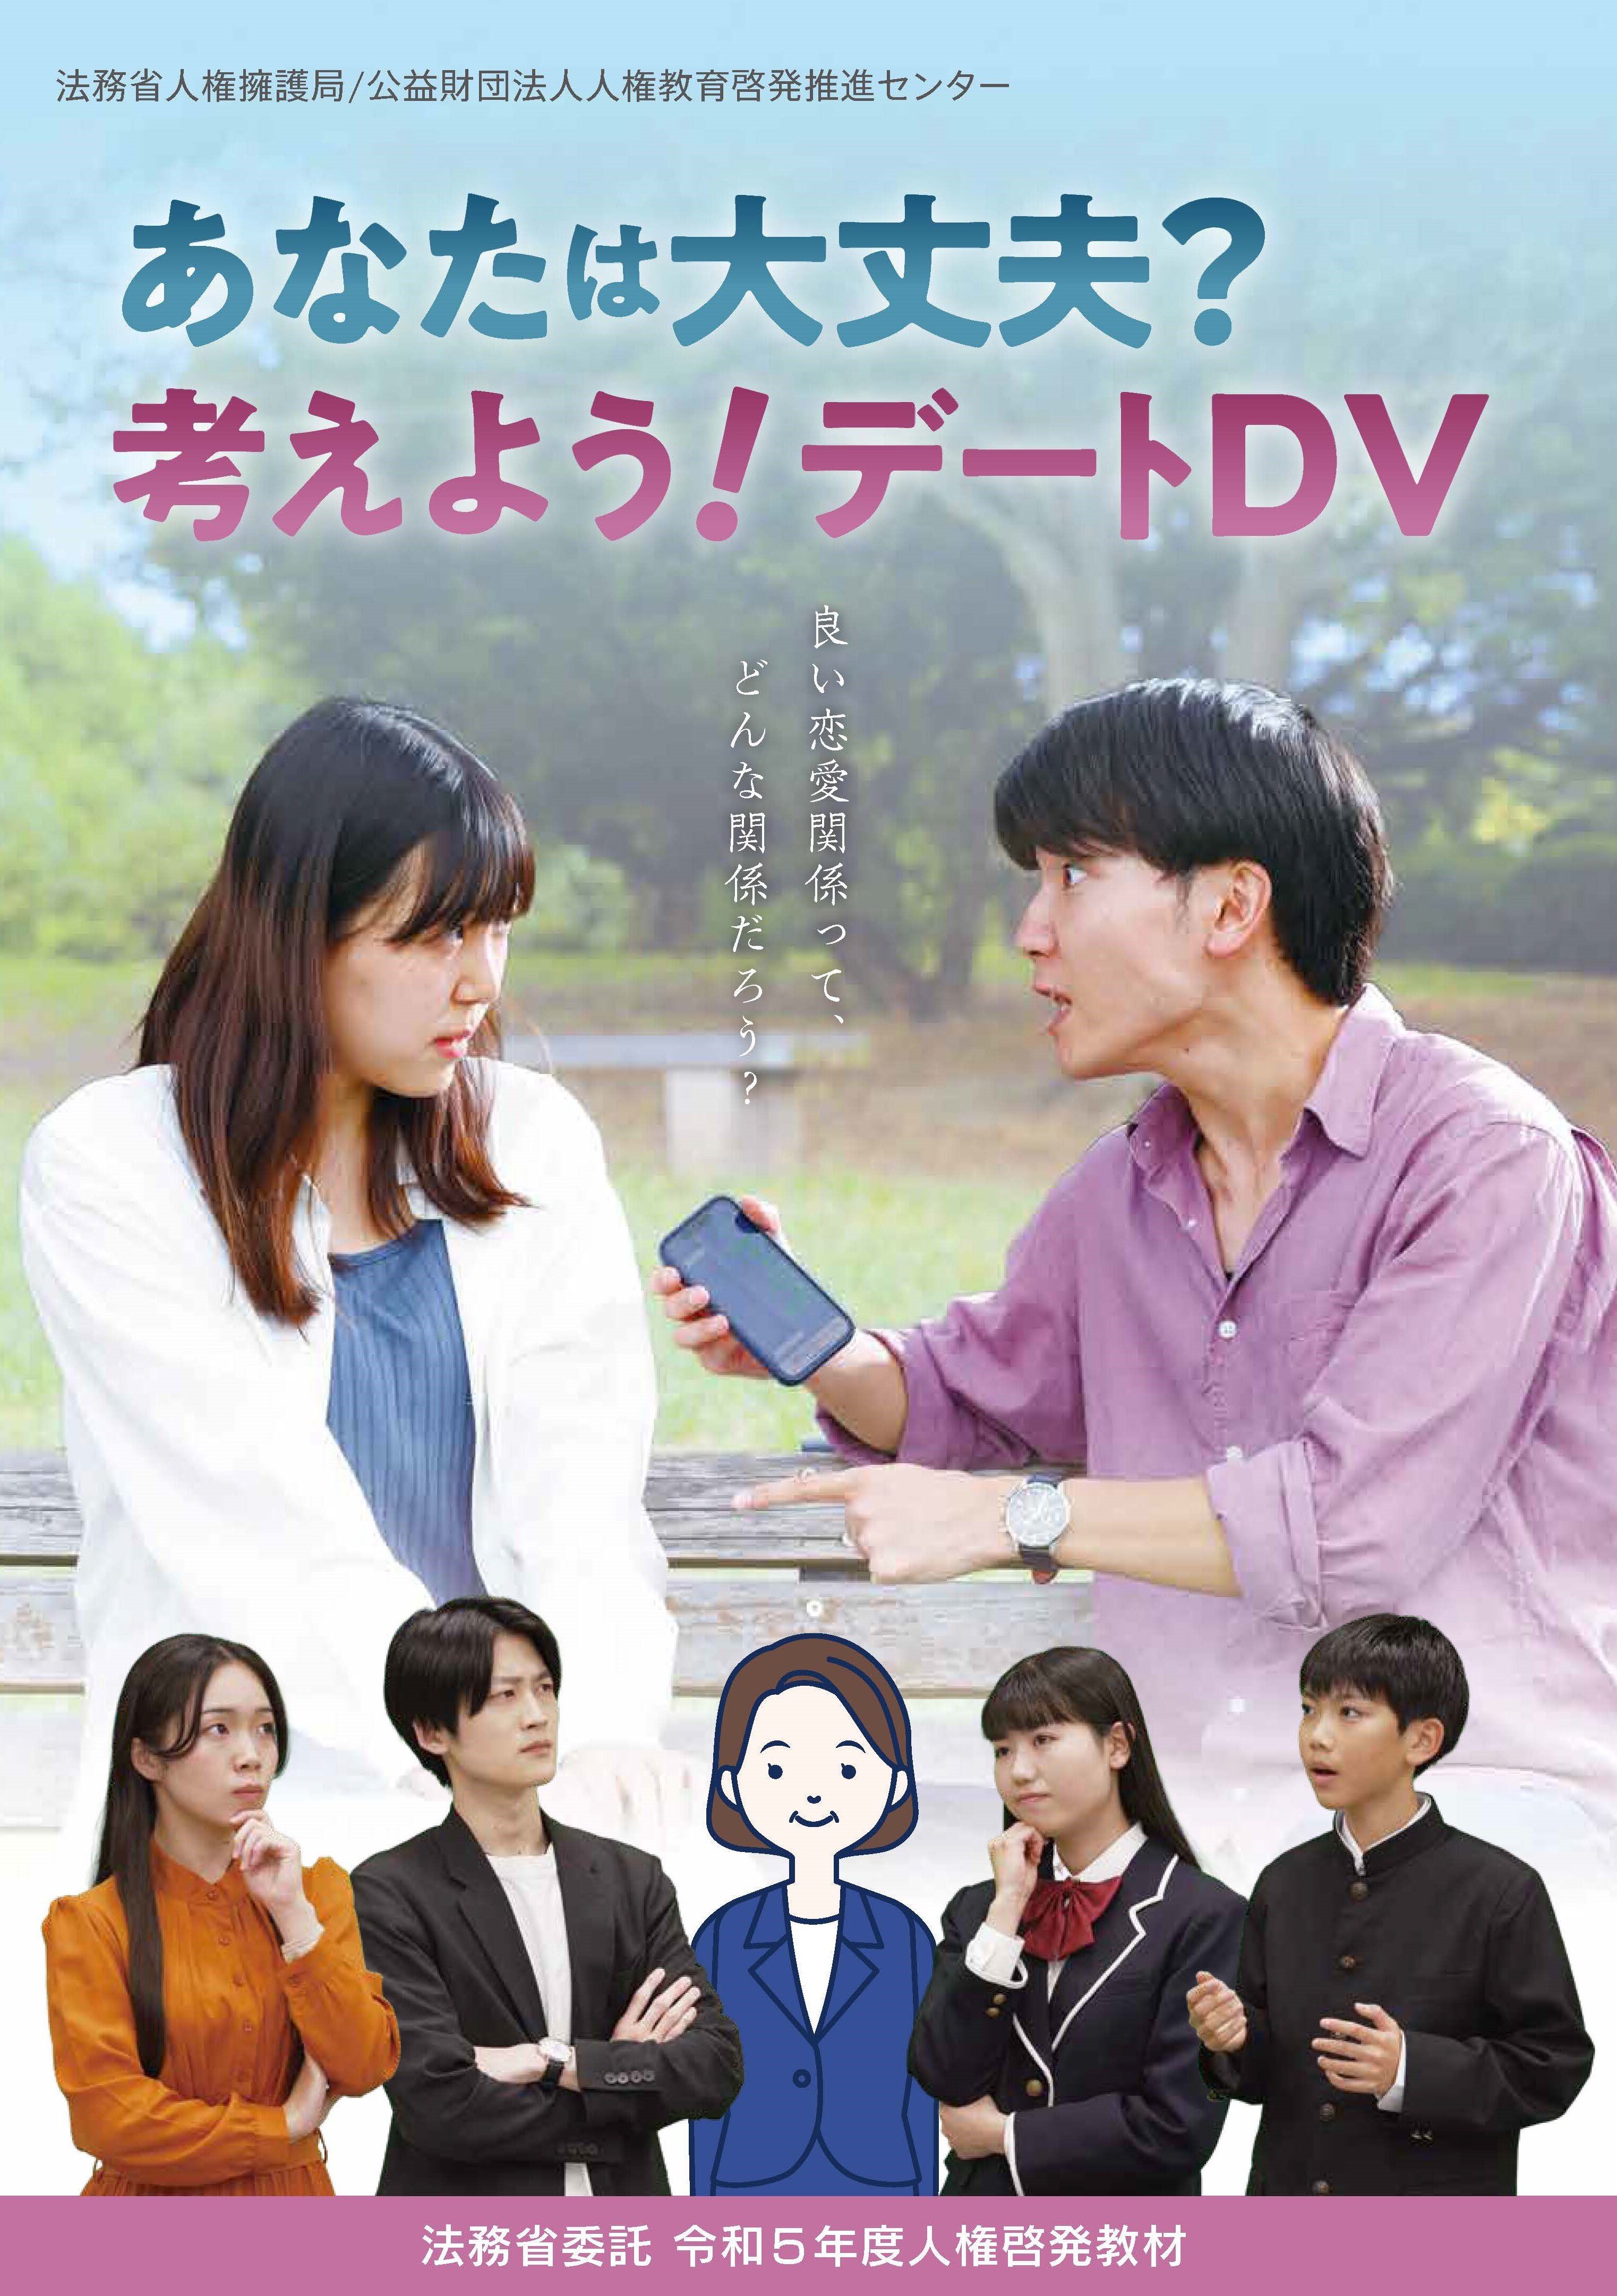 R5-DVD-dateDV.jpg